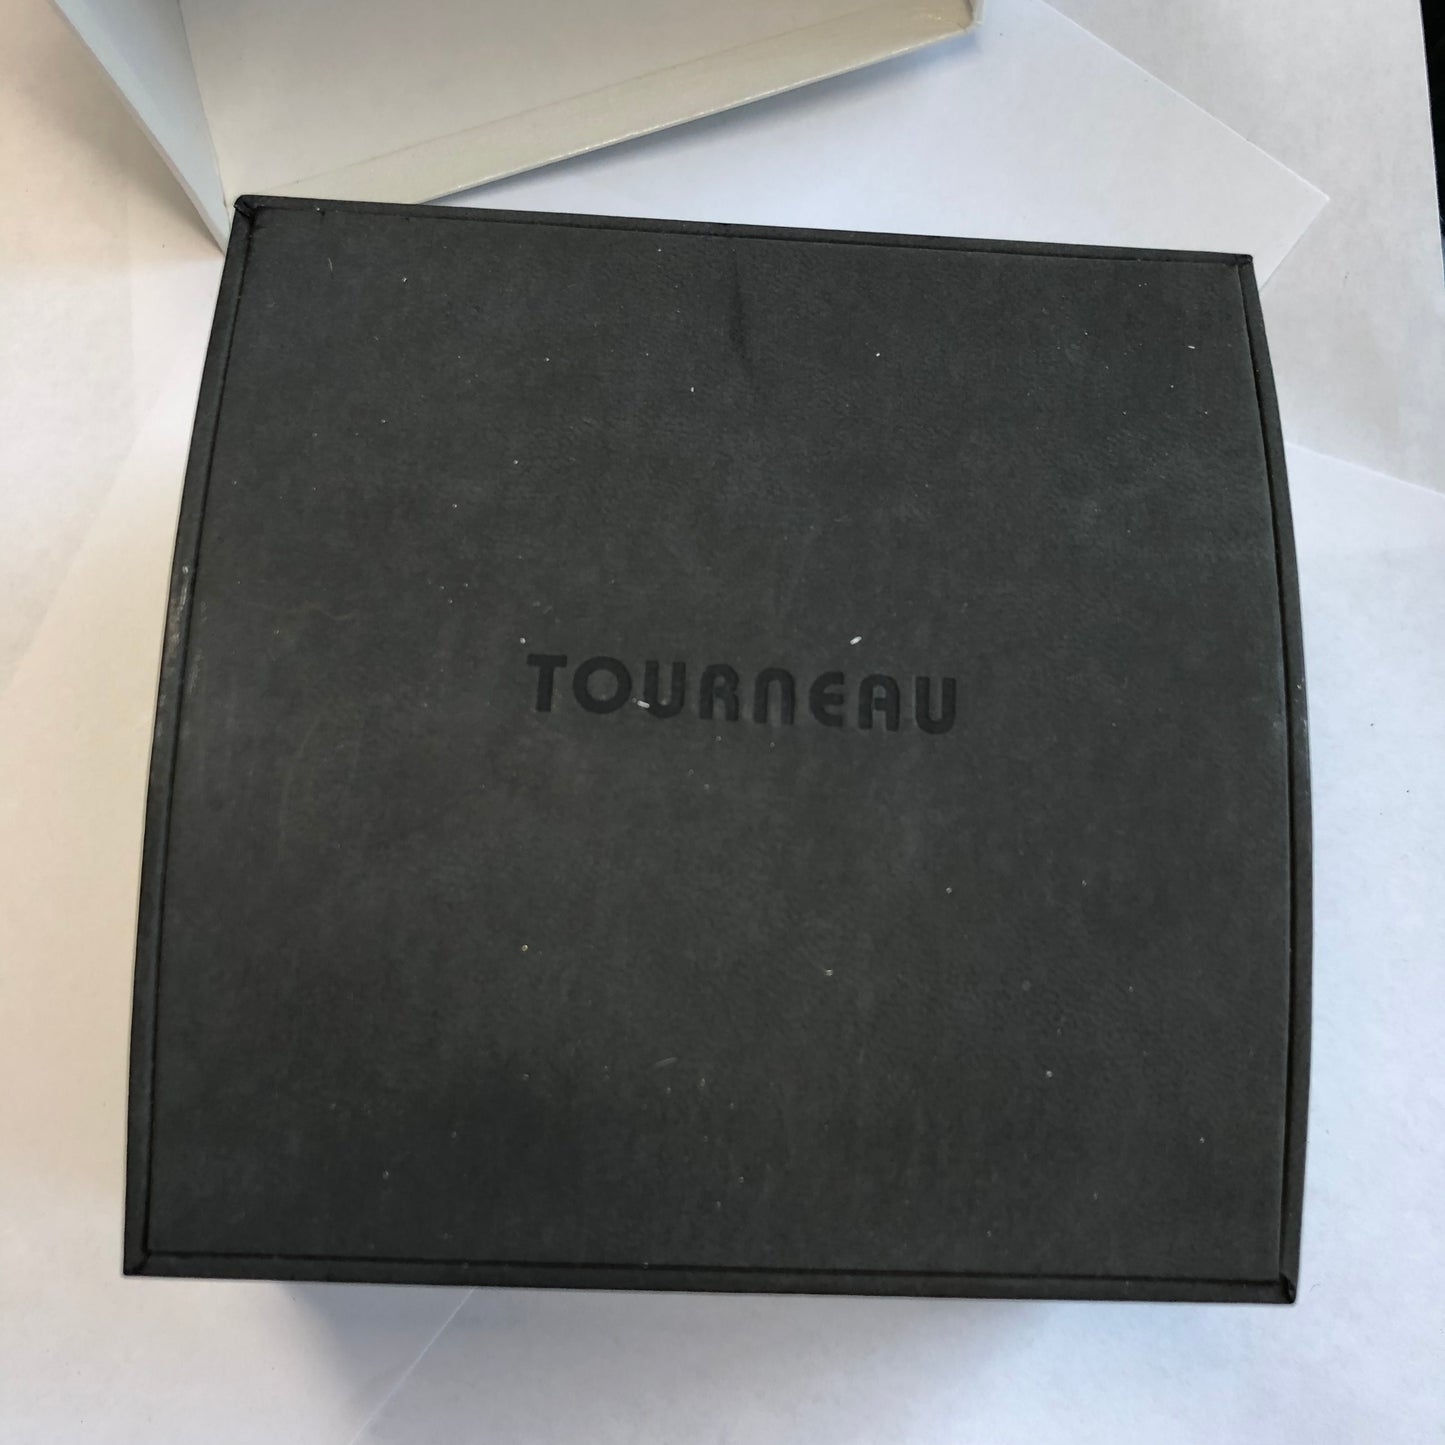 TOURNEAU Box plus Outer Box 5x5x3.5 inches